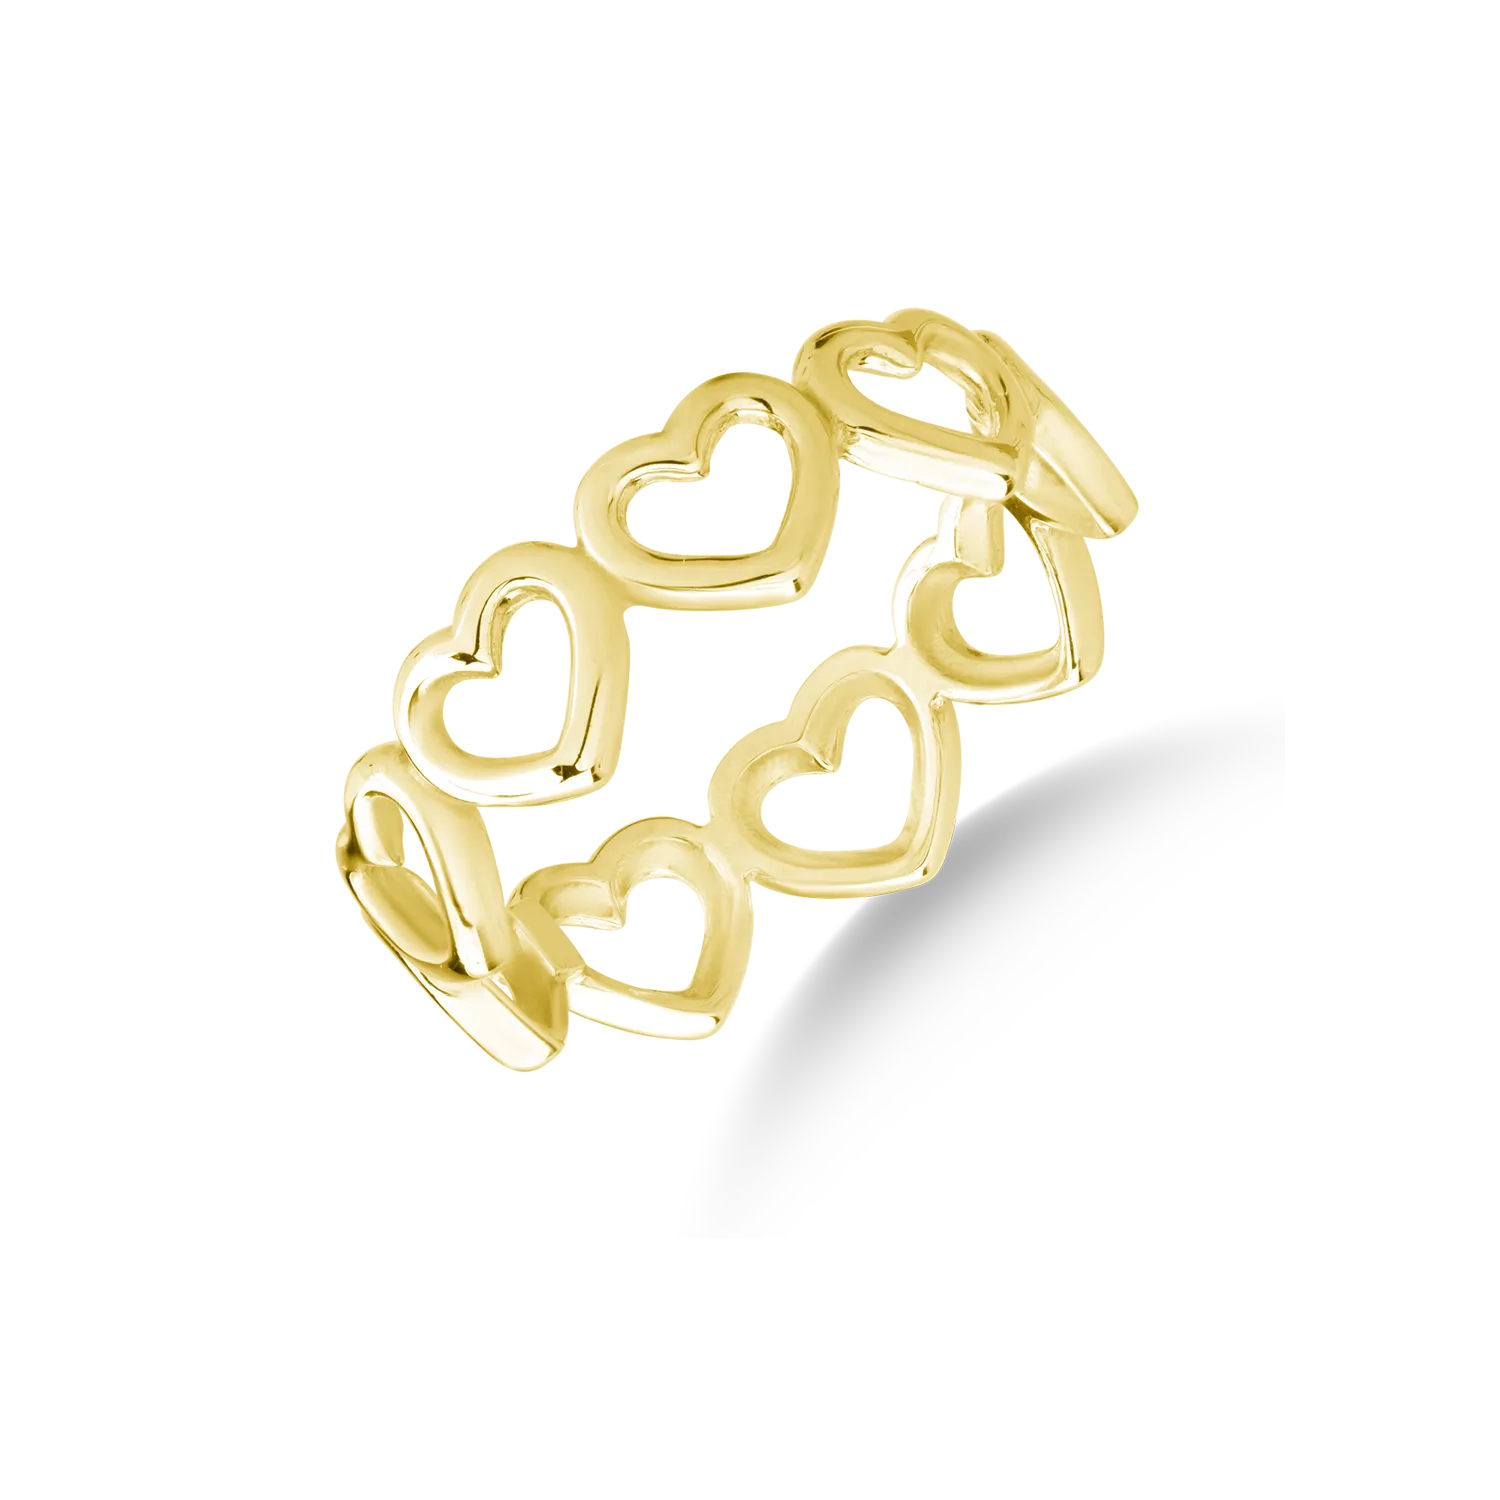 14 karátos sárga arany gyűrű